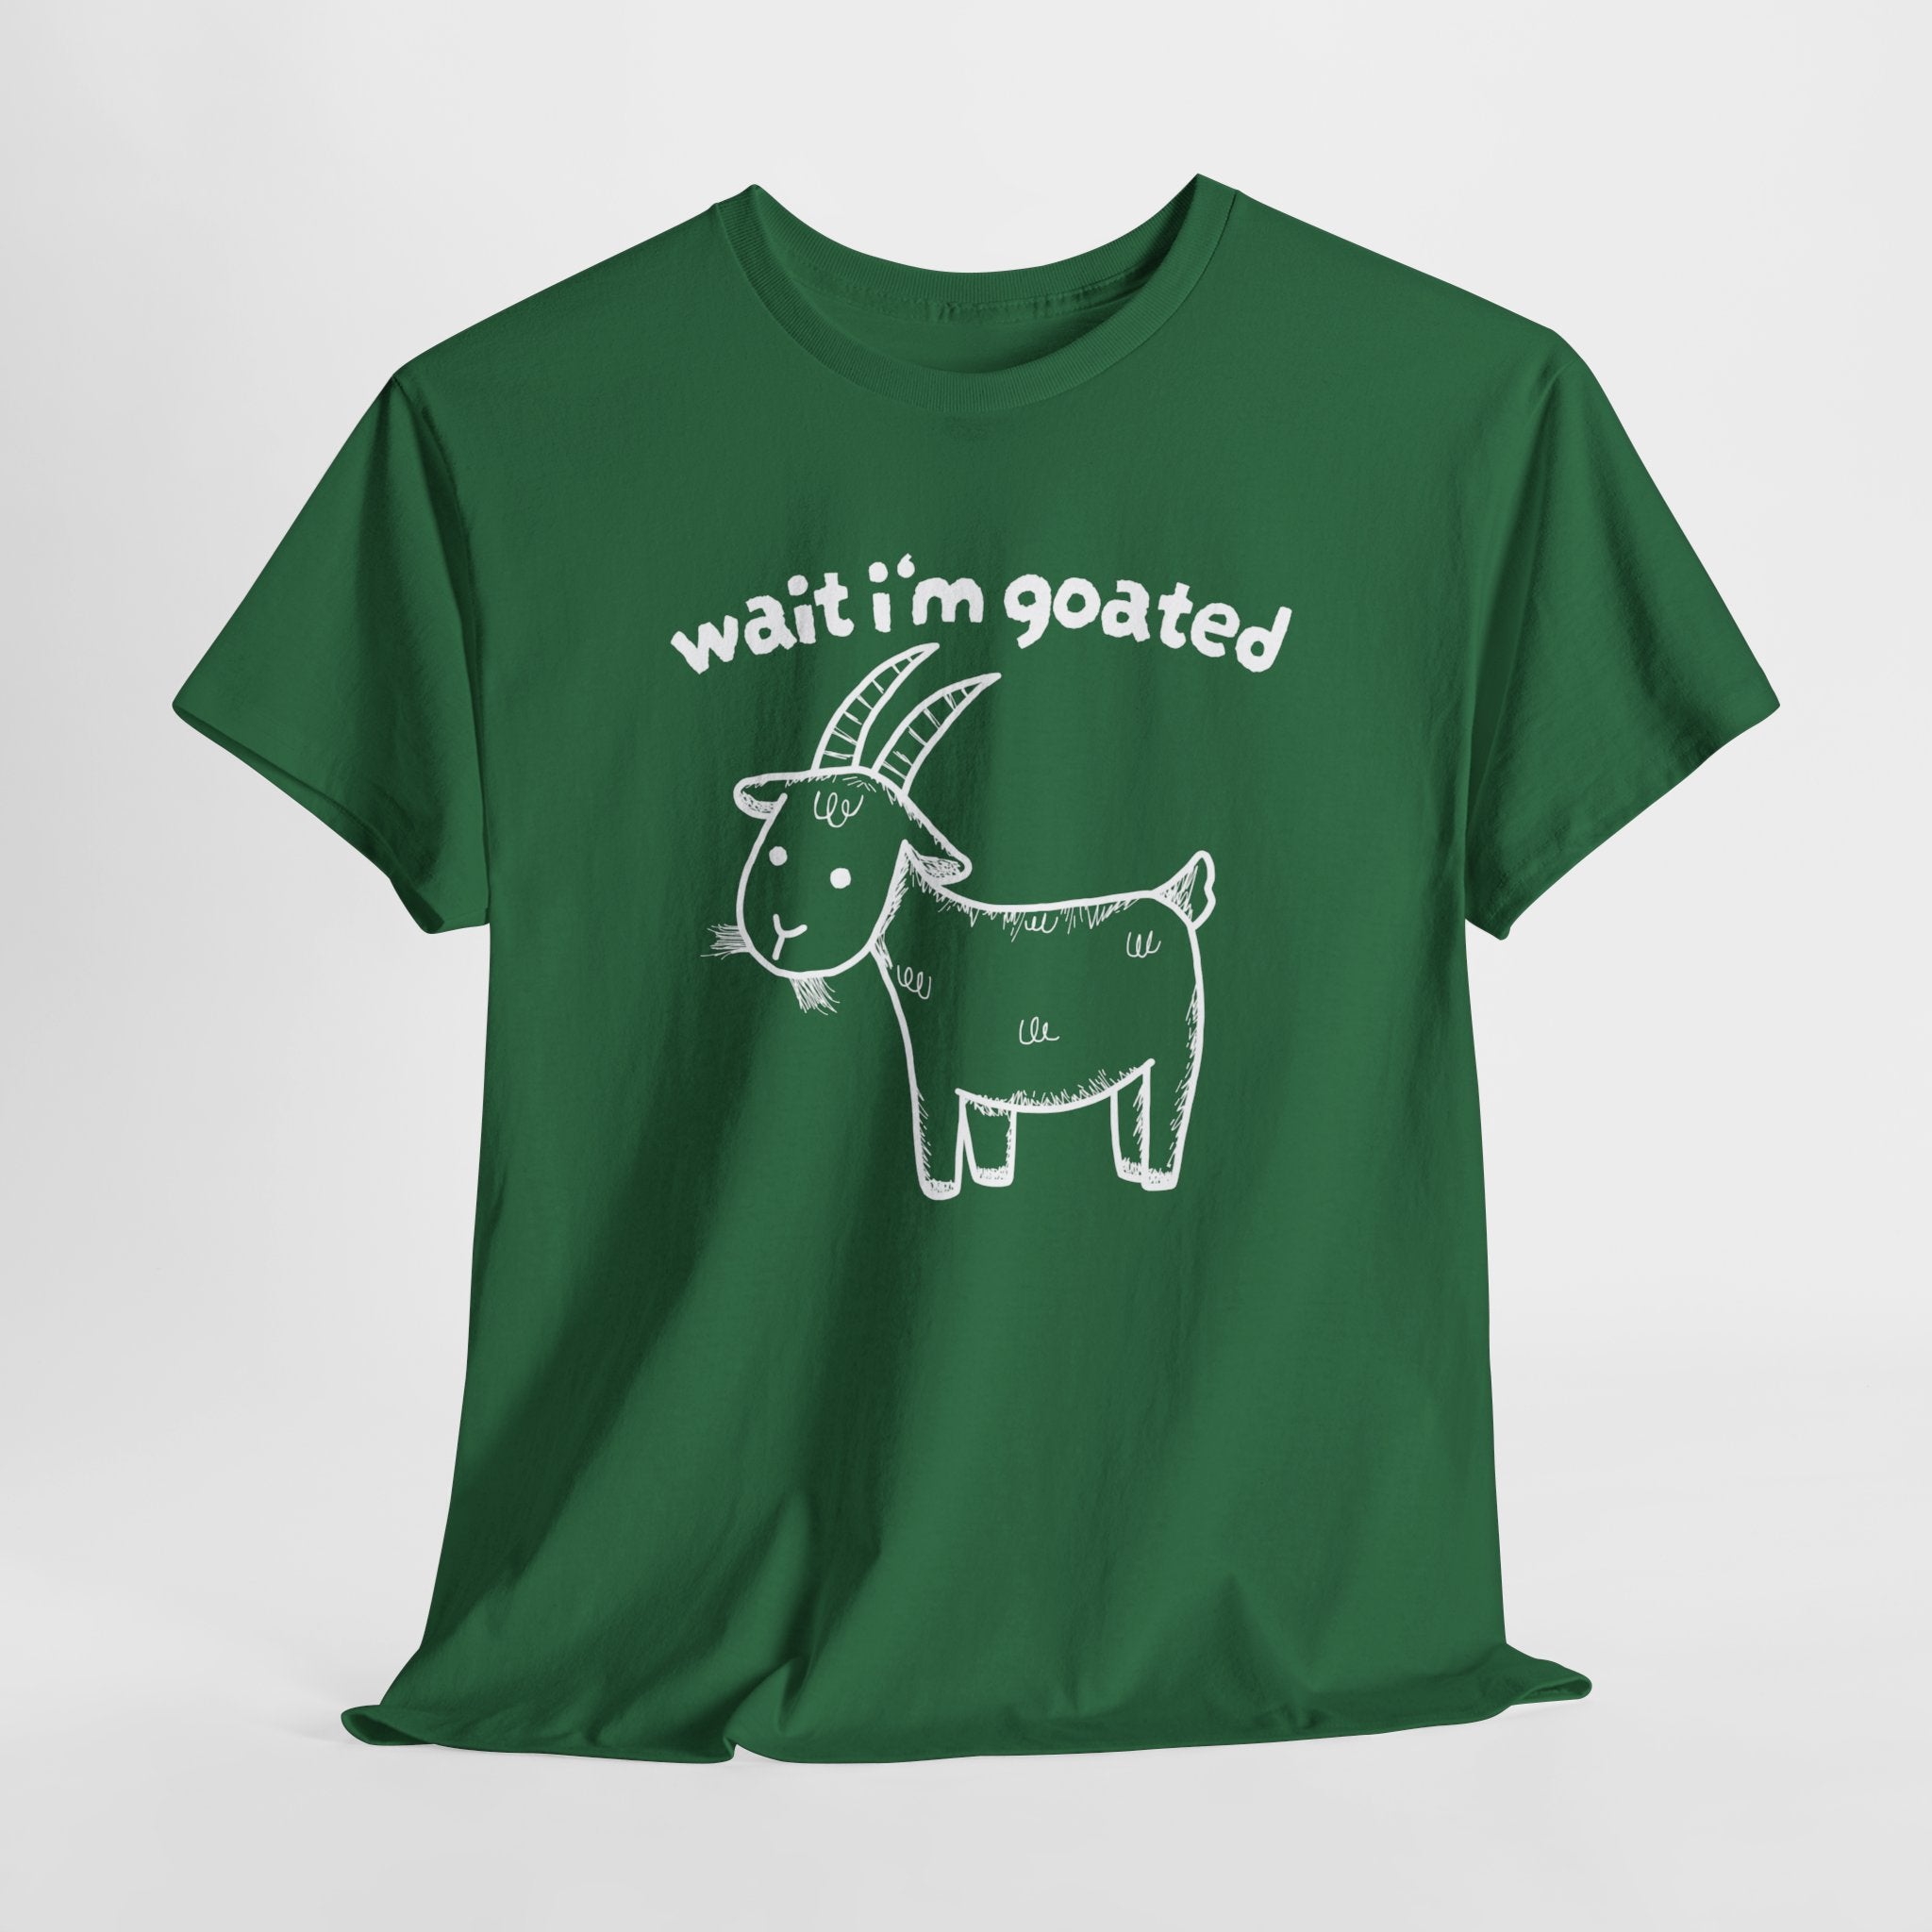 Wait I'm Goated Shirt